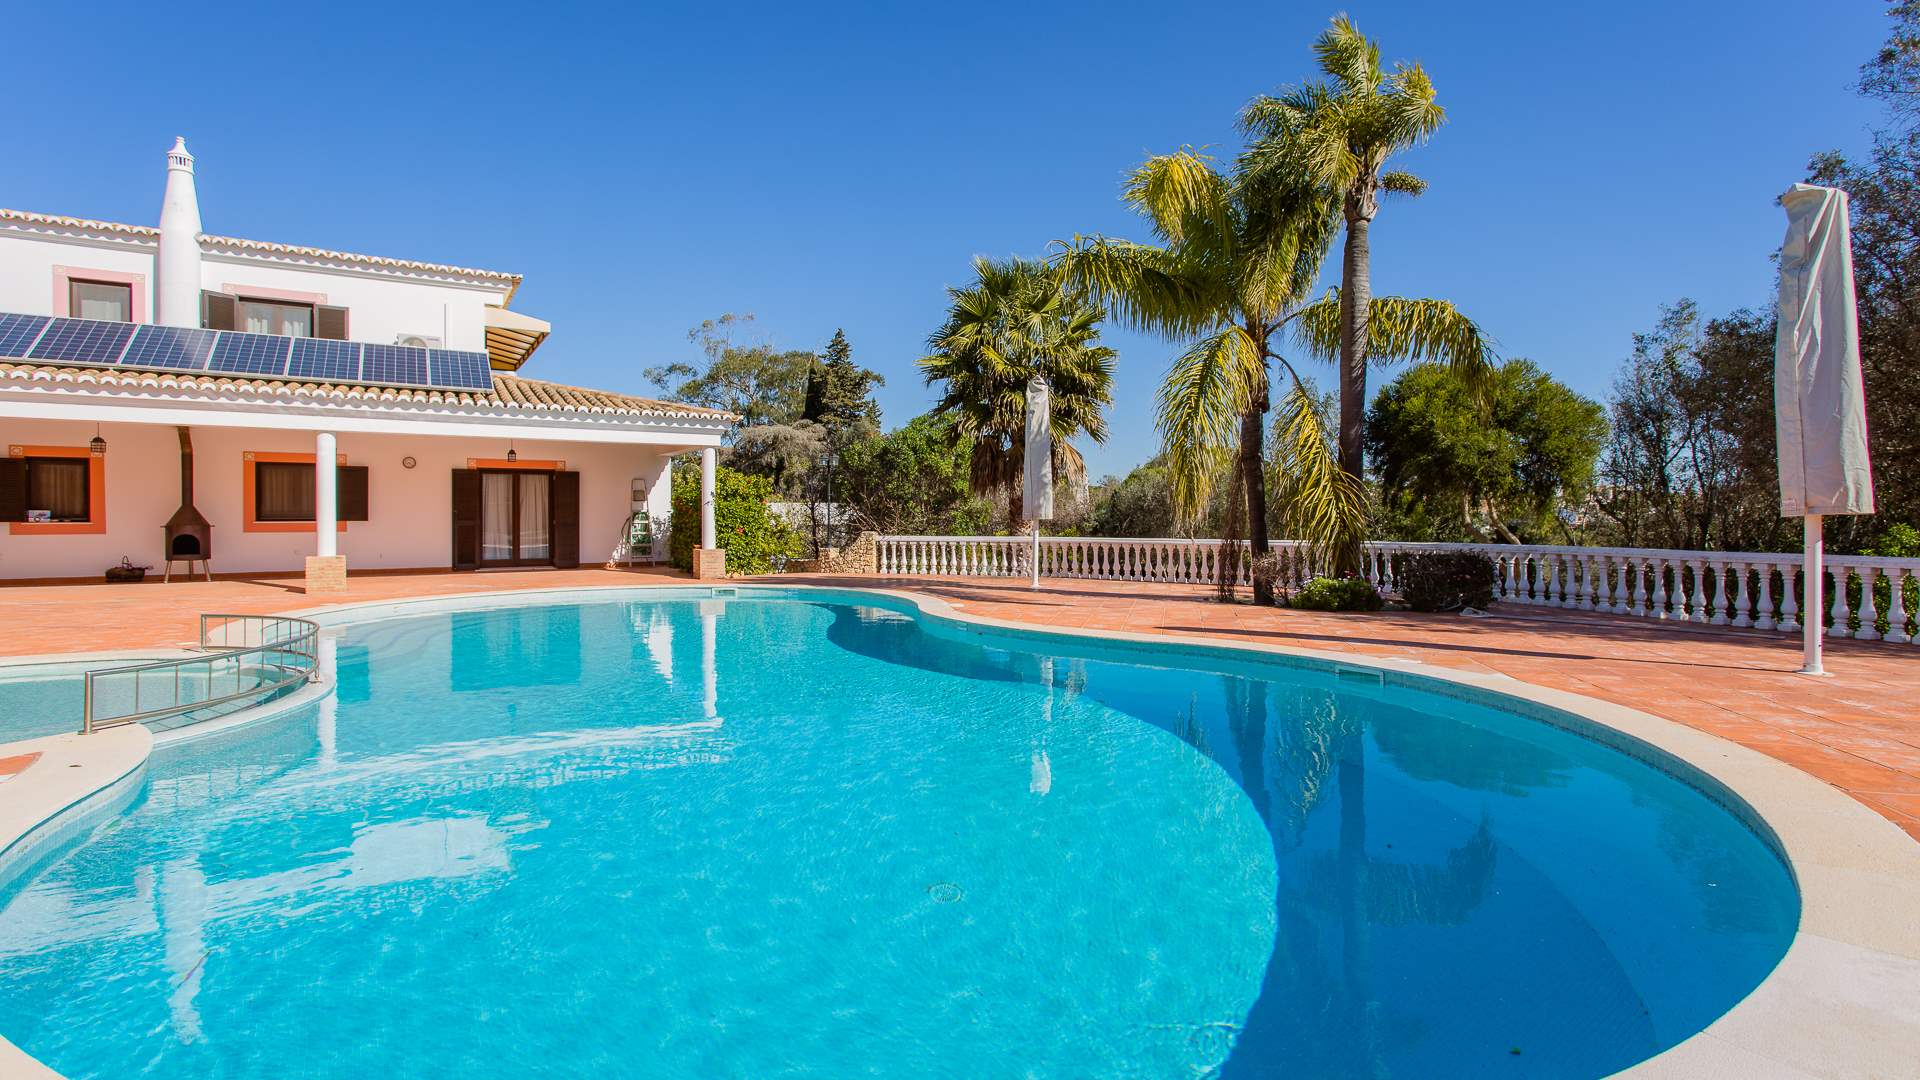 Casa Mouraria, 7 Bedrooms Rate, 7 bedroom villa in Carvoeiro Area, Algarve Photo #1